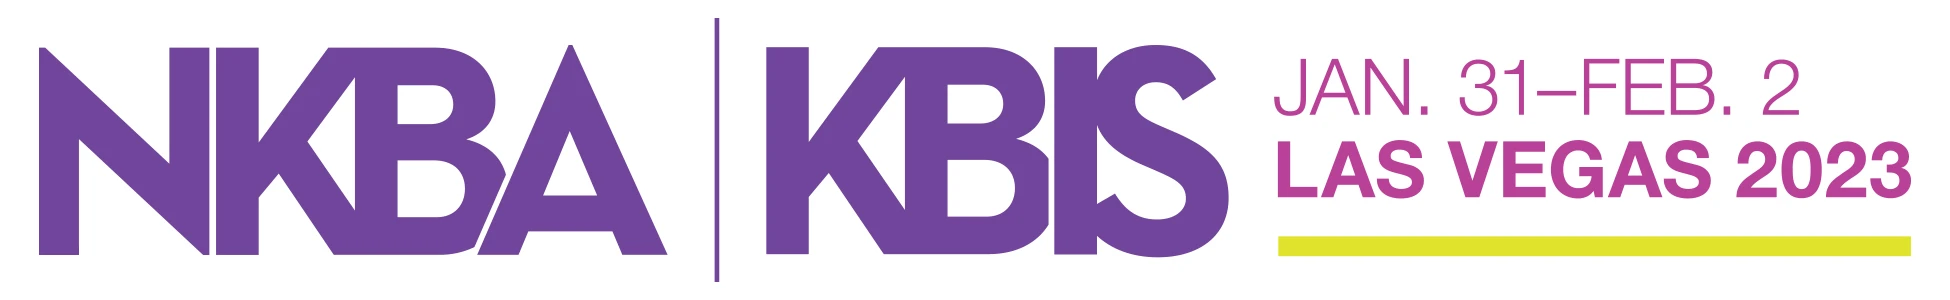 kbis.com